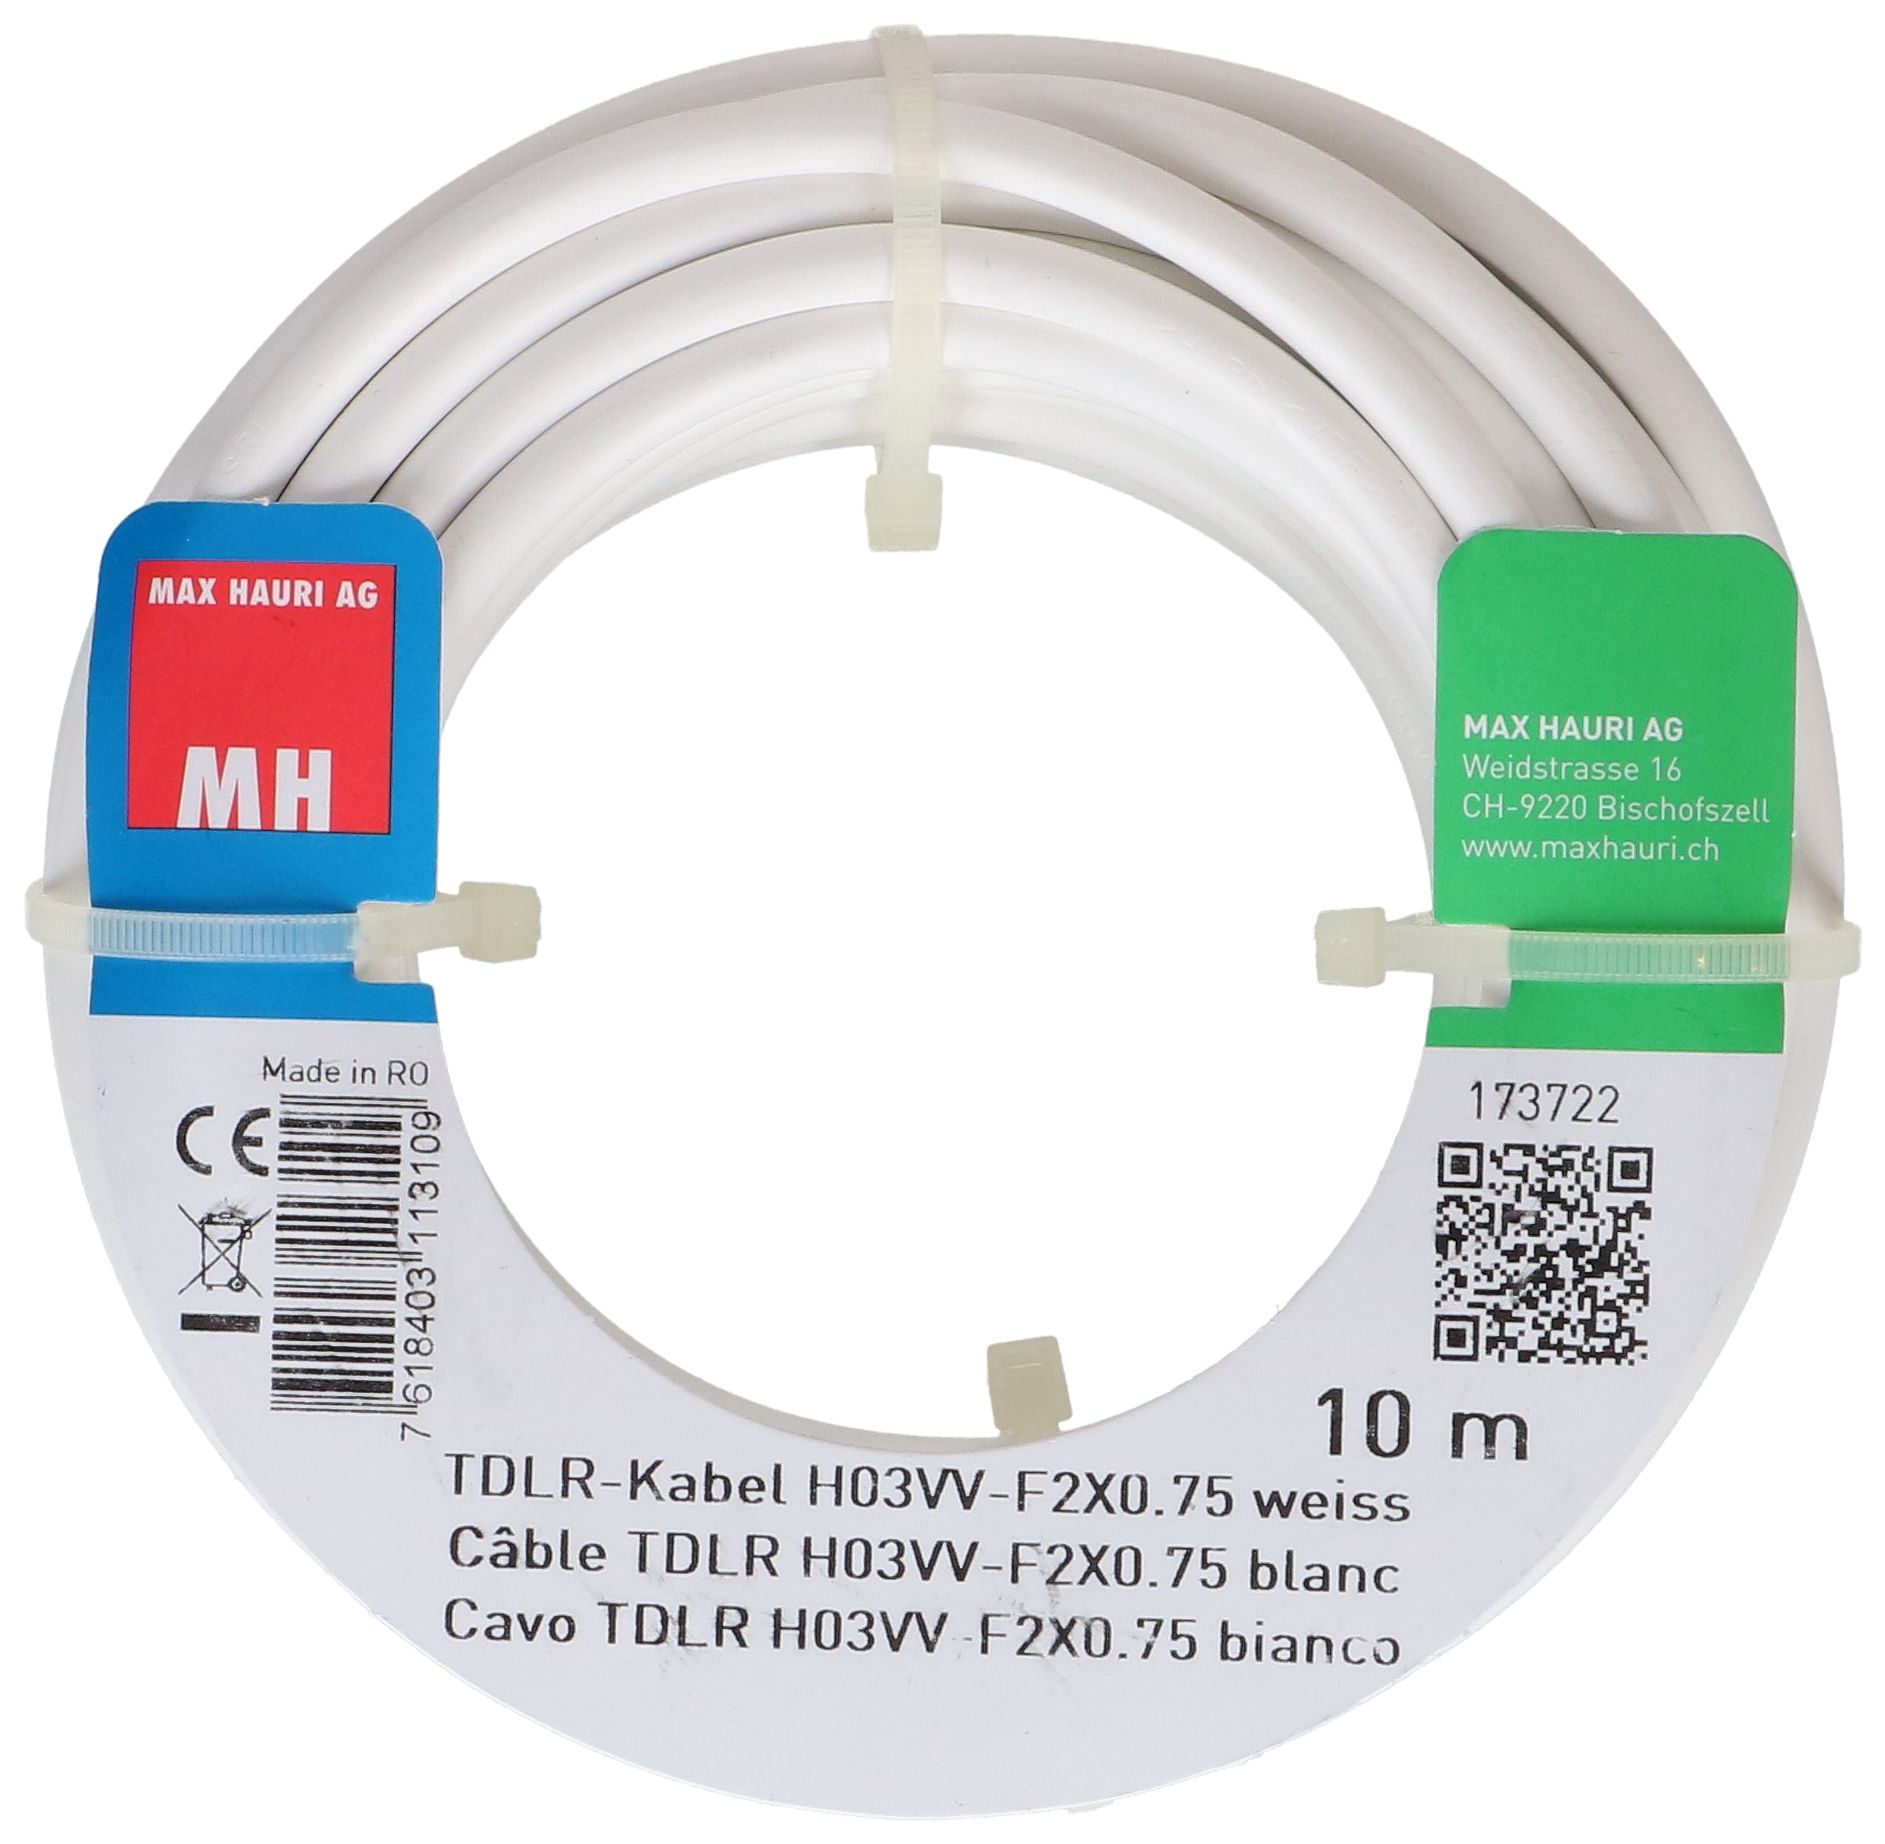 TDLR-Kabel H03VV-F2X0.75 10m weiss